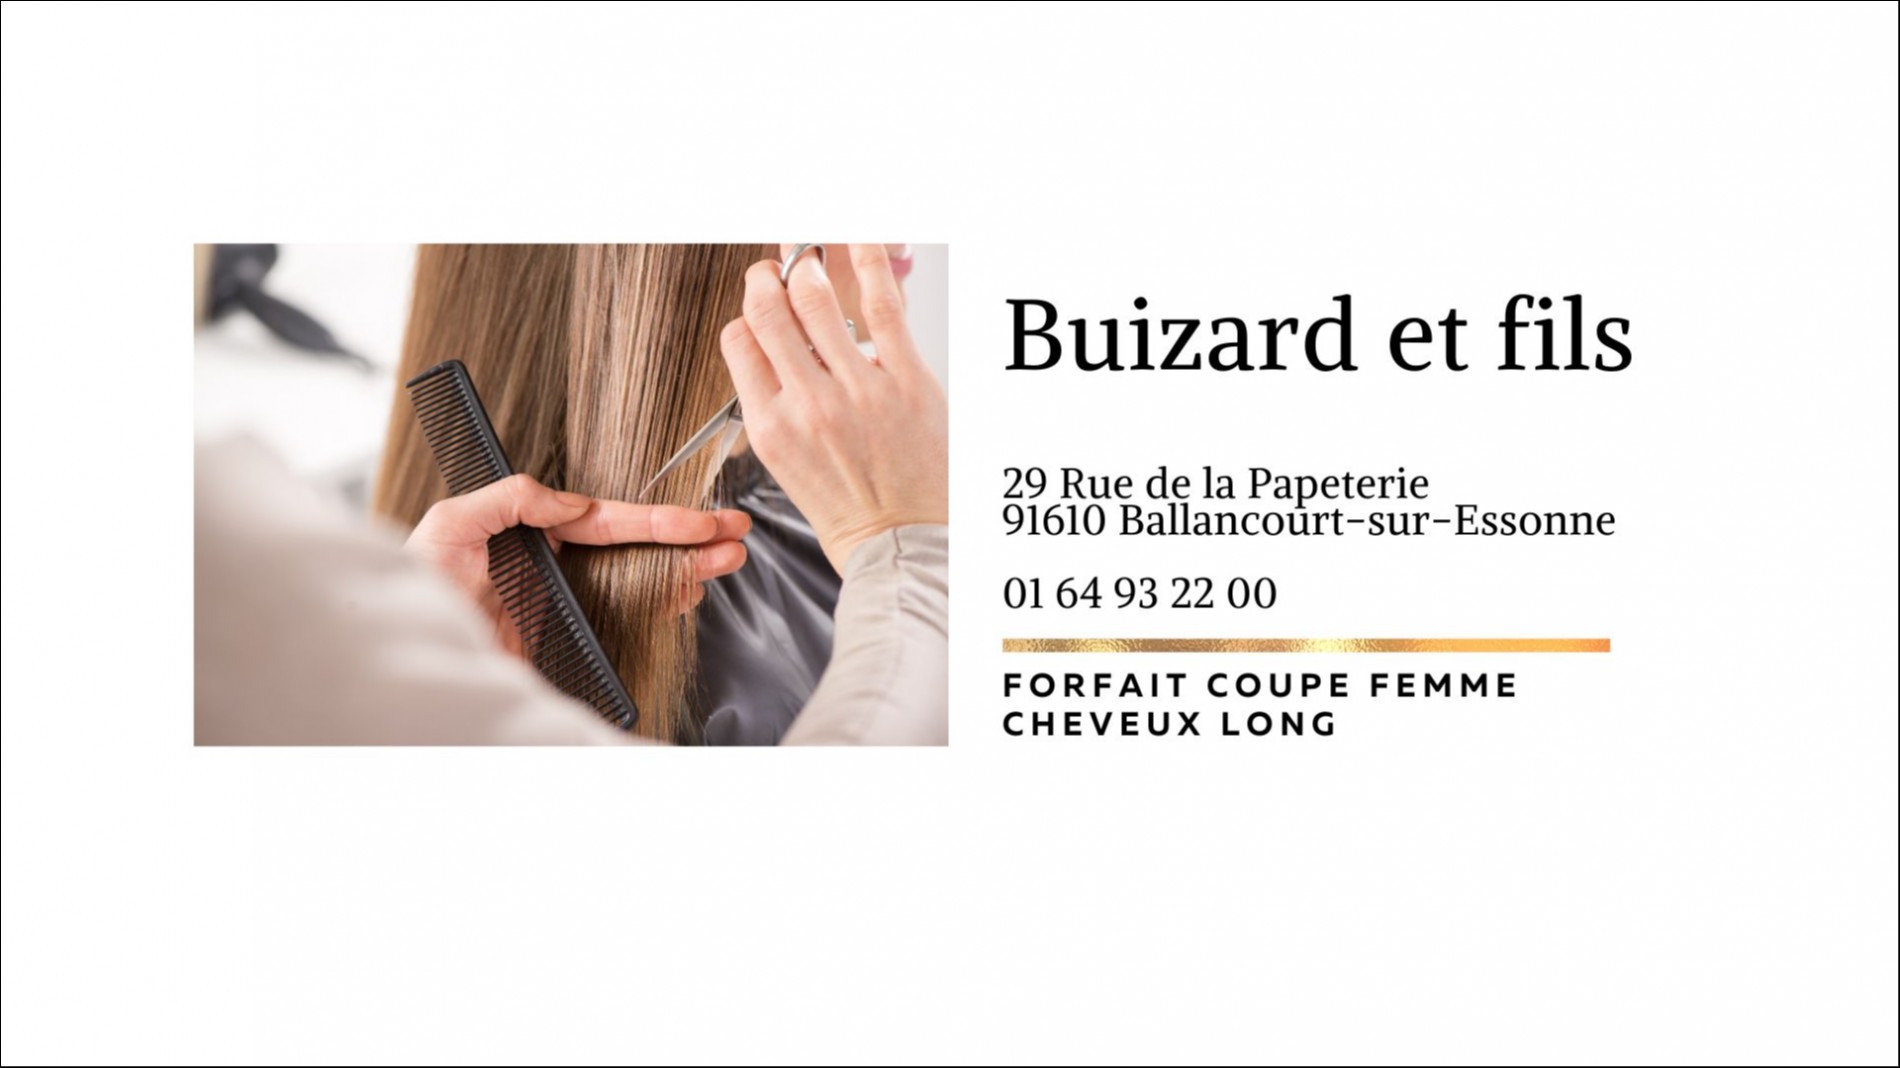 SALON BUIZARD ET FILS - Coupe Femme cheveux long